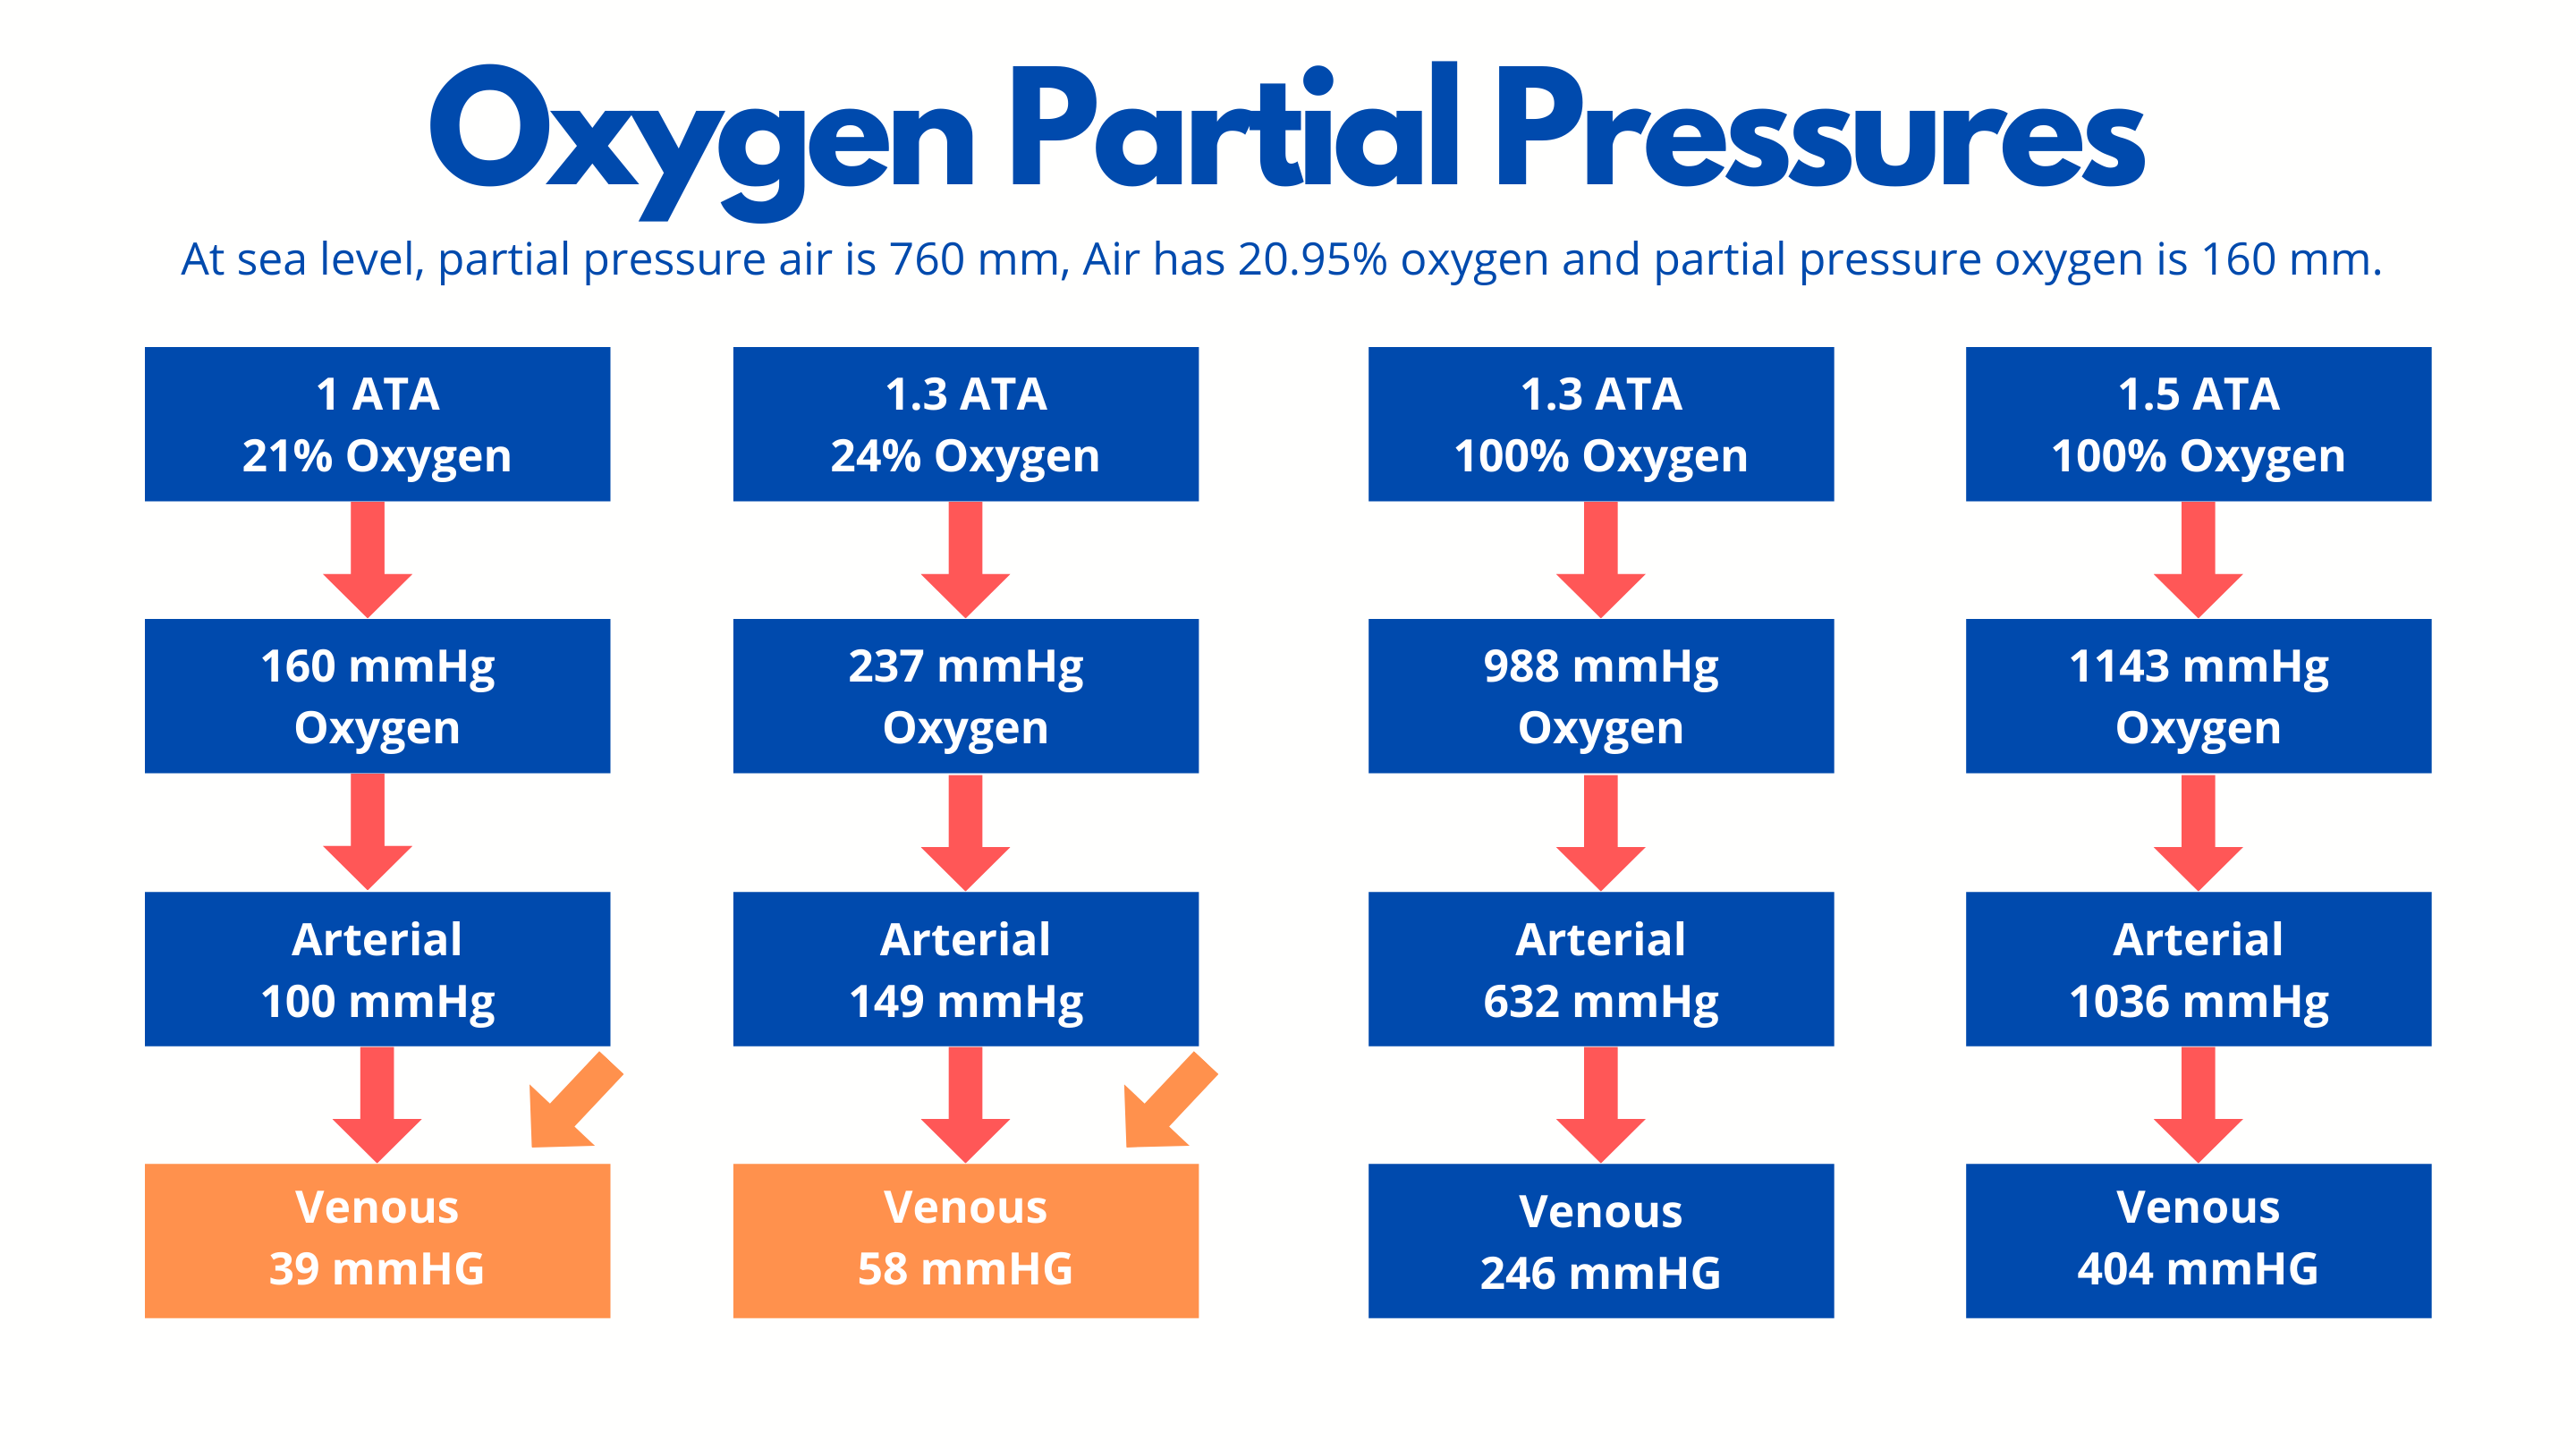 Oxygen Partial pressure under mild Hyperbaric oxygen conditions